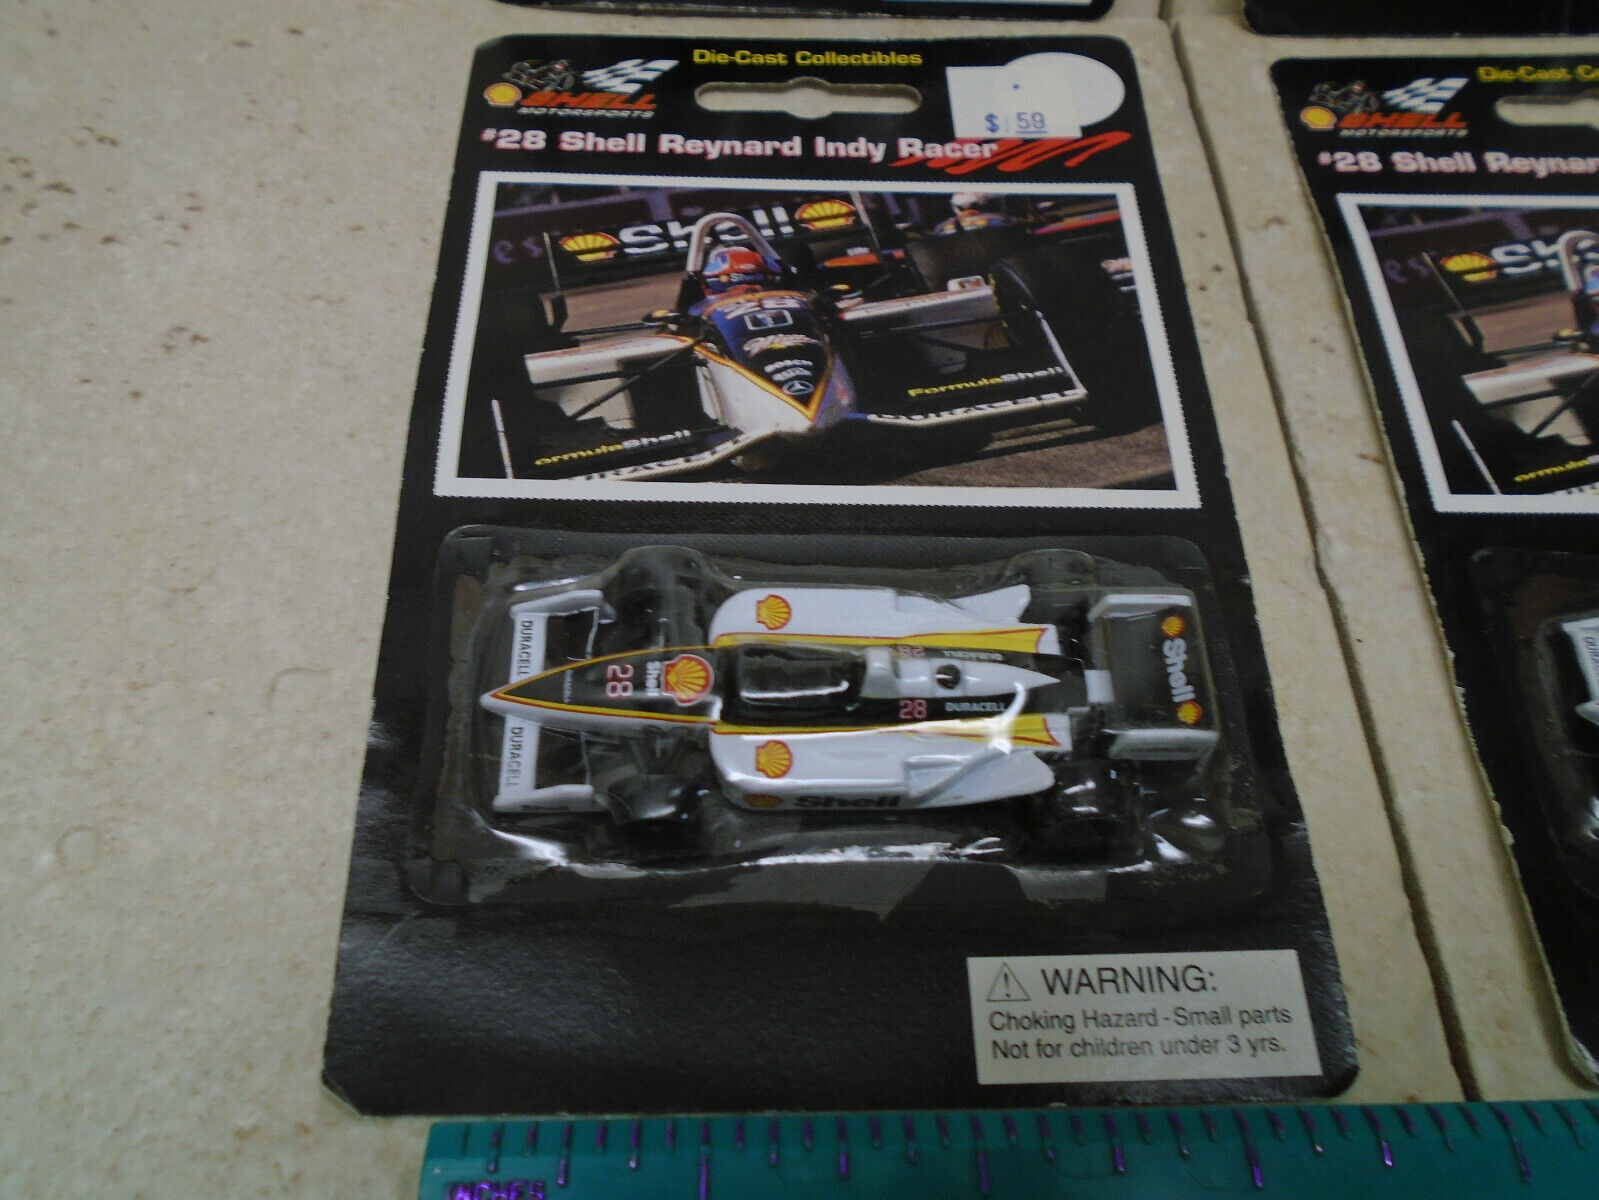 NEW Shell Reynard Indy Racer Cars #28 Die Cast 1996 Shell Oil Motorsports LOT 4  Shell, EPI, Shell Motorsports - фотография #6